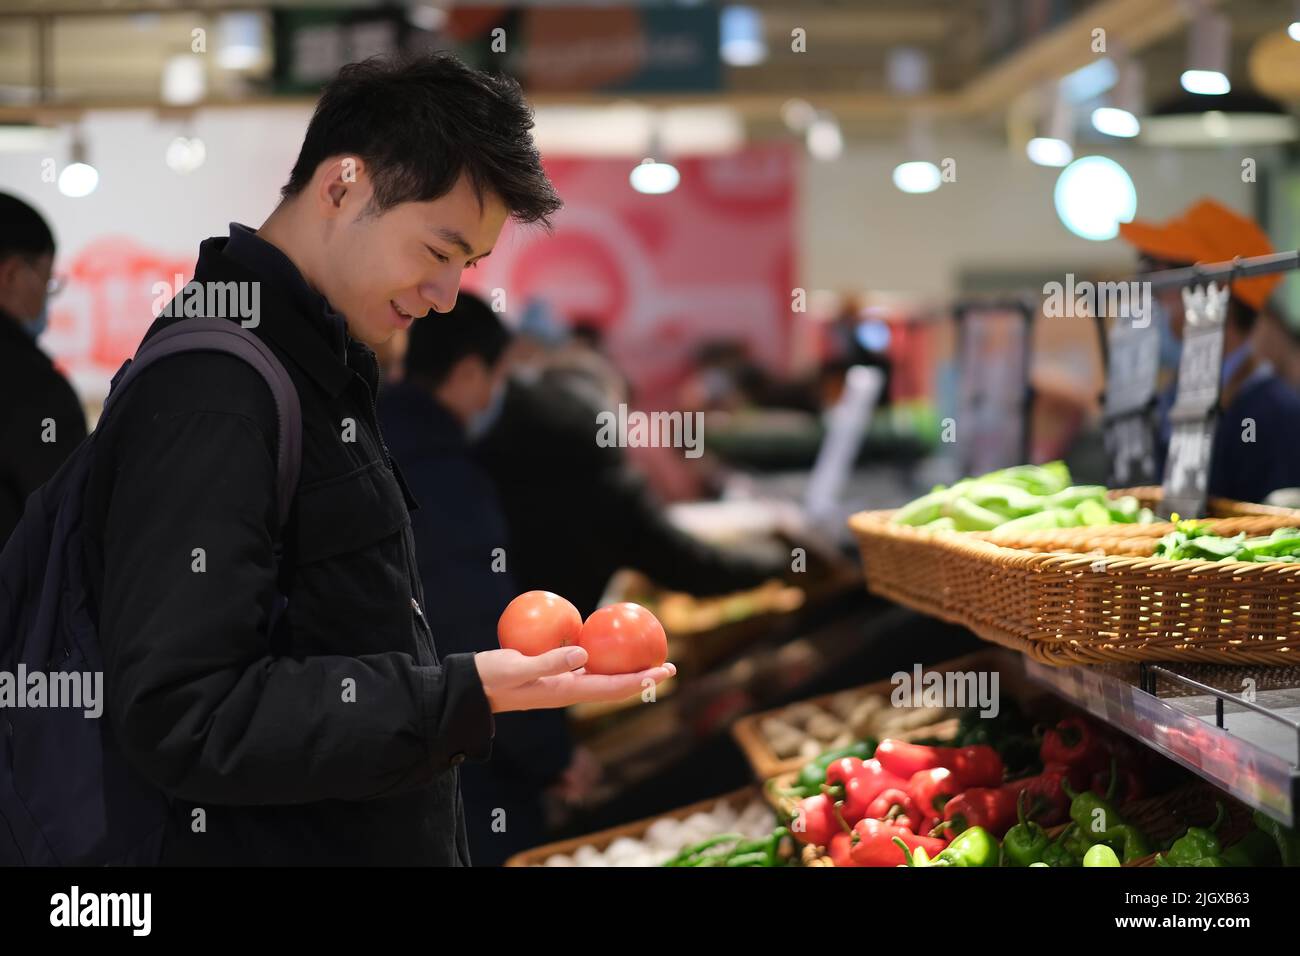 Jeune homme chinois qui vérifie les légumes de tomate à l'épicerie. Souriant, les Asiatiques magasinent dans un supermarché Banque D'Images